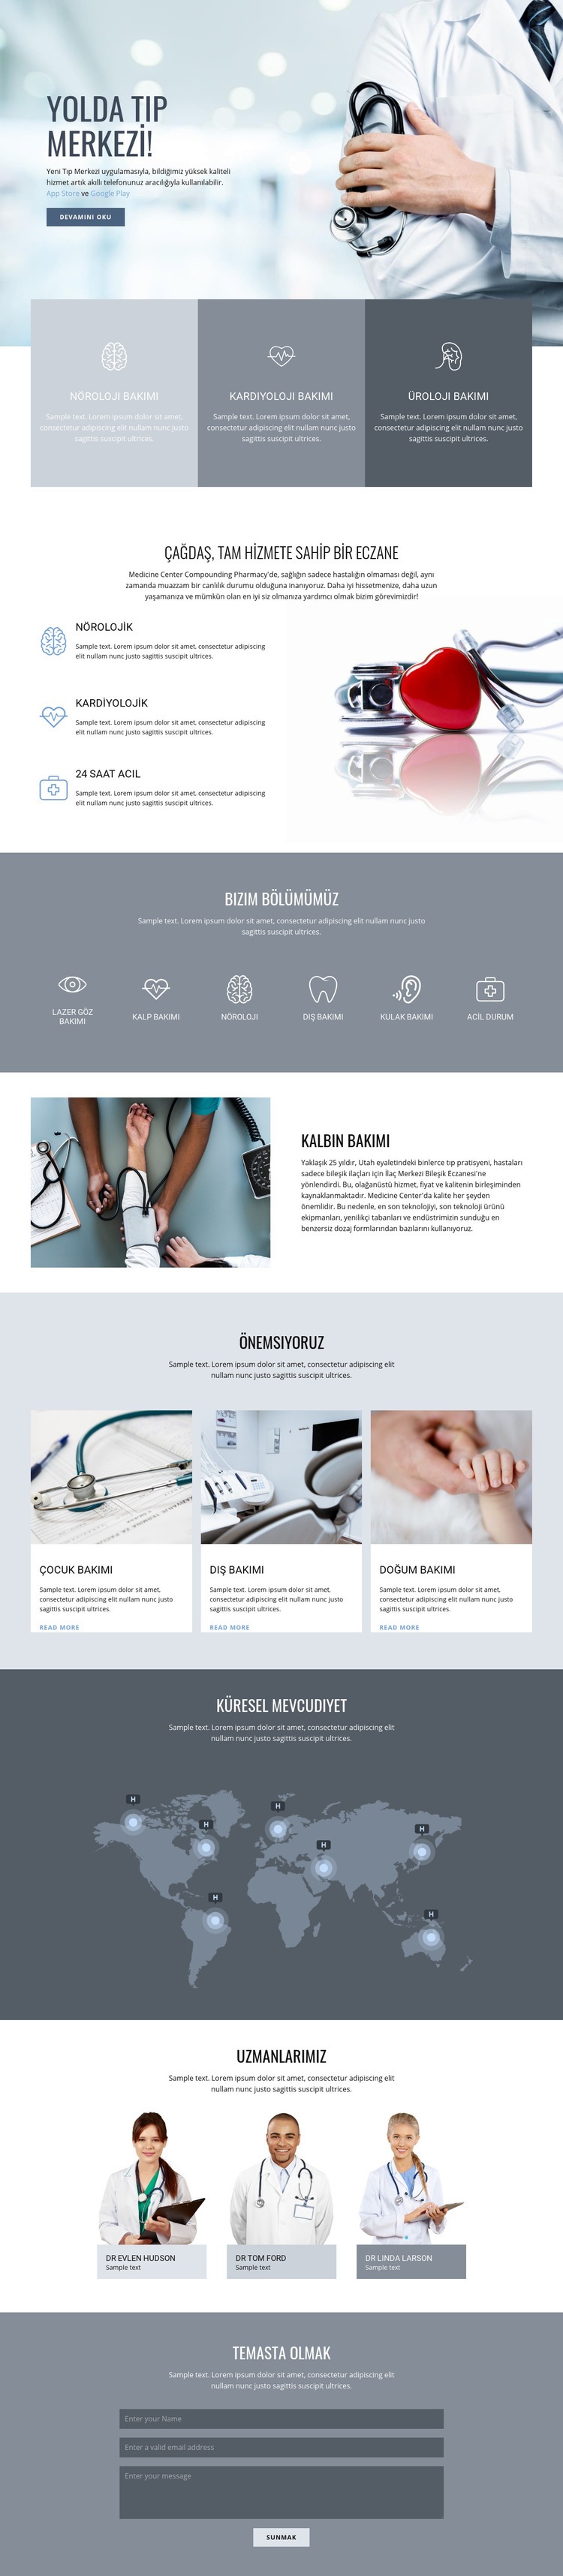 Eczacılık ve tıp Açılış sayfası